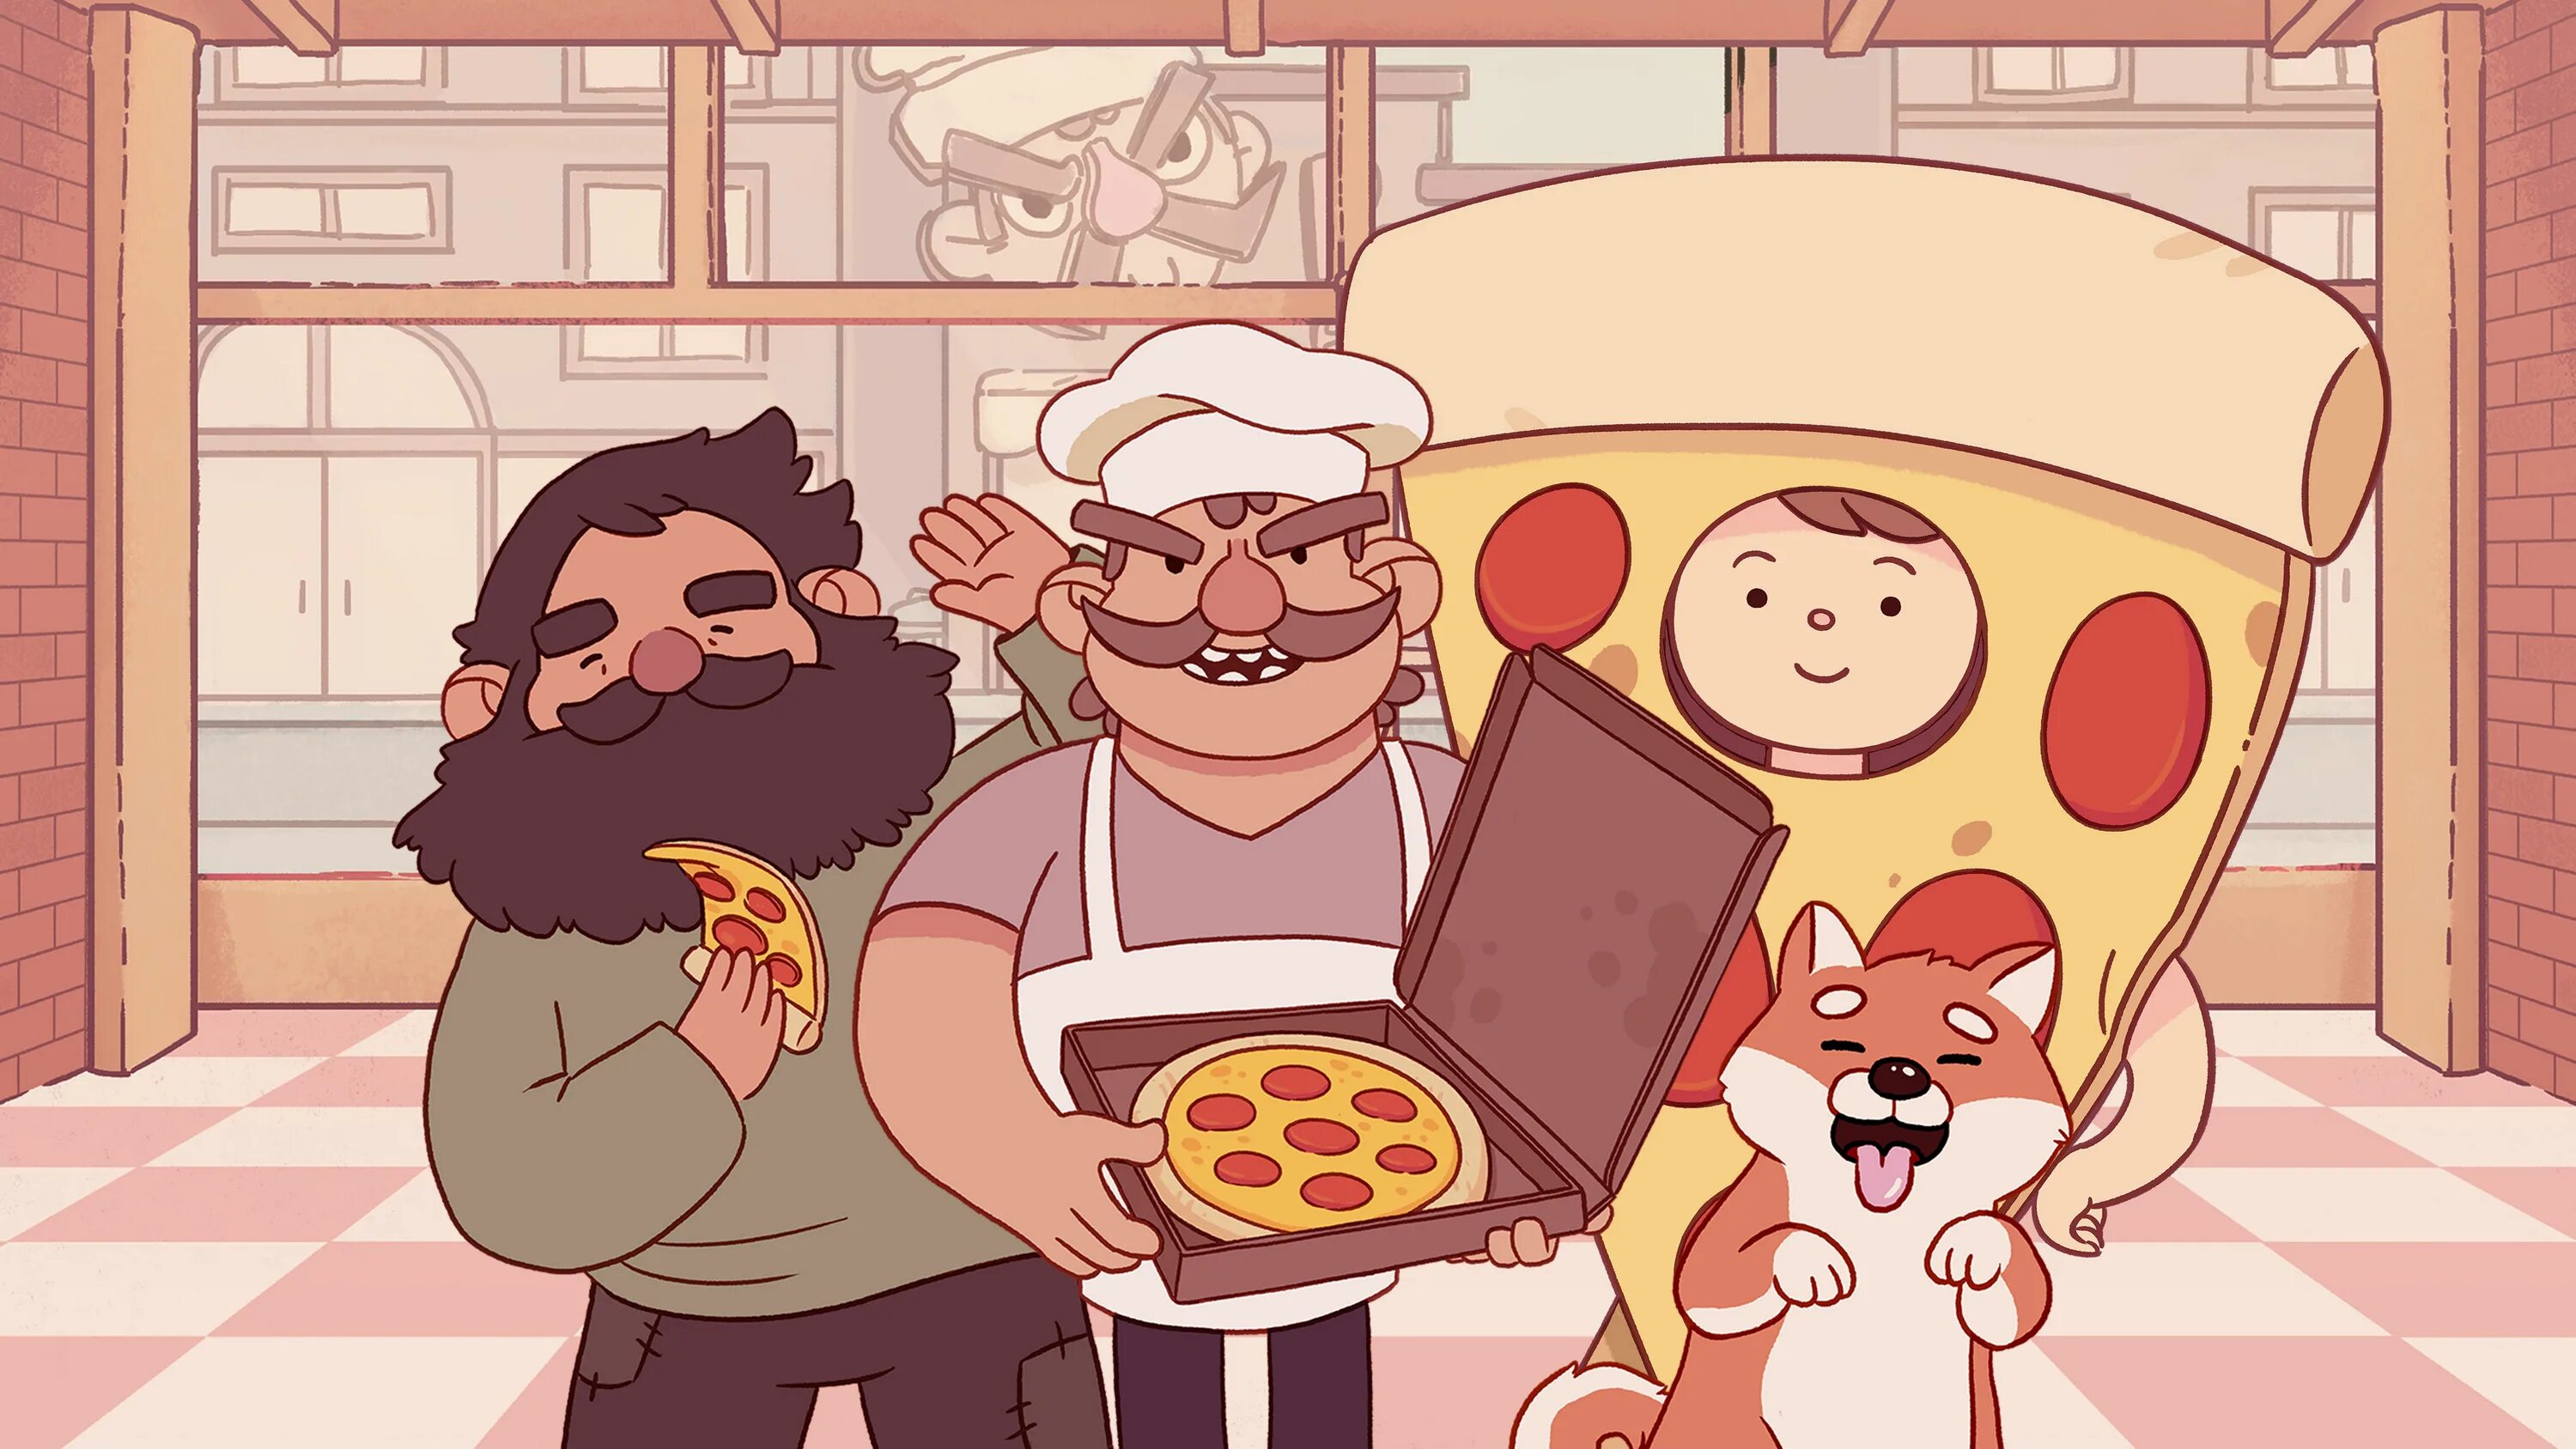 Бомжик из игры хорошая пицца отличная пицца. Хорошая пицца отличная пицца бомж. Хорошая пицца отличная пицца Бездомный. Бомж из хорошая пицца отличная пицца.